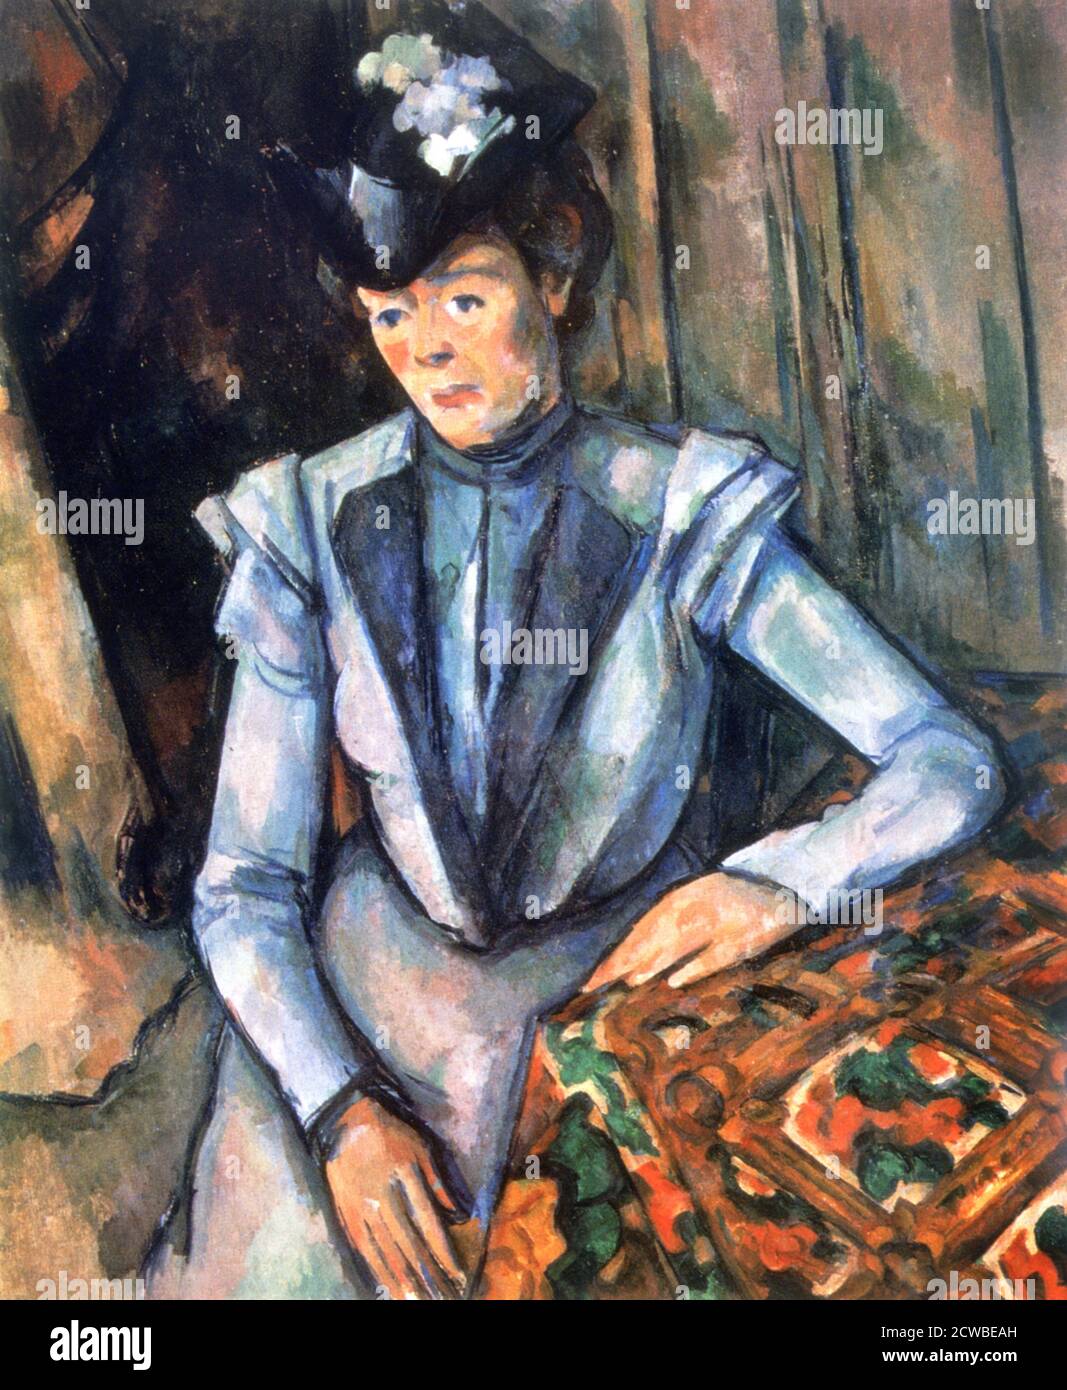 Frau sitzt in blau', 1902-1906. Künstler: Paul Cezanne. Cezanne (1839-1906) war ein französischer Künstler und Post-Impressionist Maler, dessen Arbeit legte den Grundstein für den Übergang von der 19. Jahrhundert impressionistischen Bewegung zu 20. Jahrhundert Stile wie Kubismus. Stockfoto